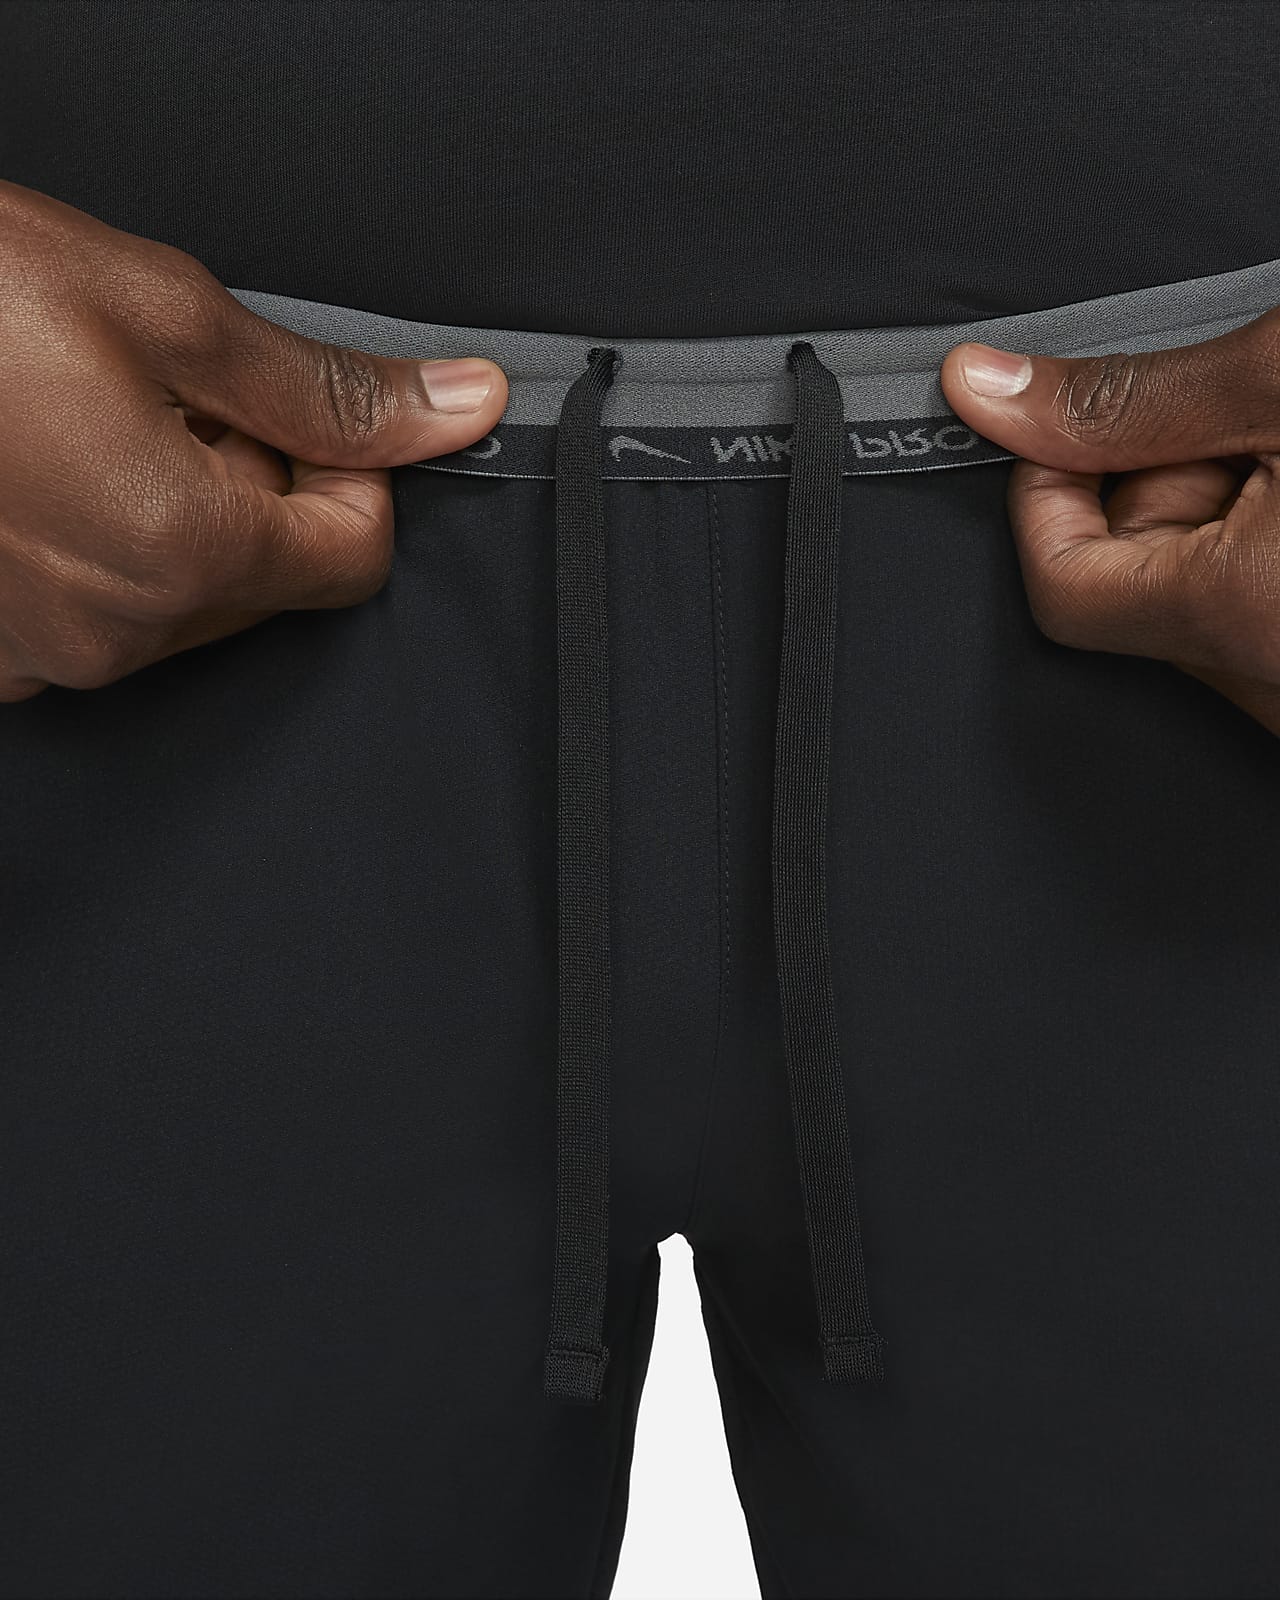 Nike Pro Dri-FIT Men's Shorts - Black